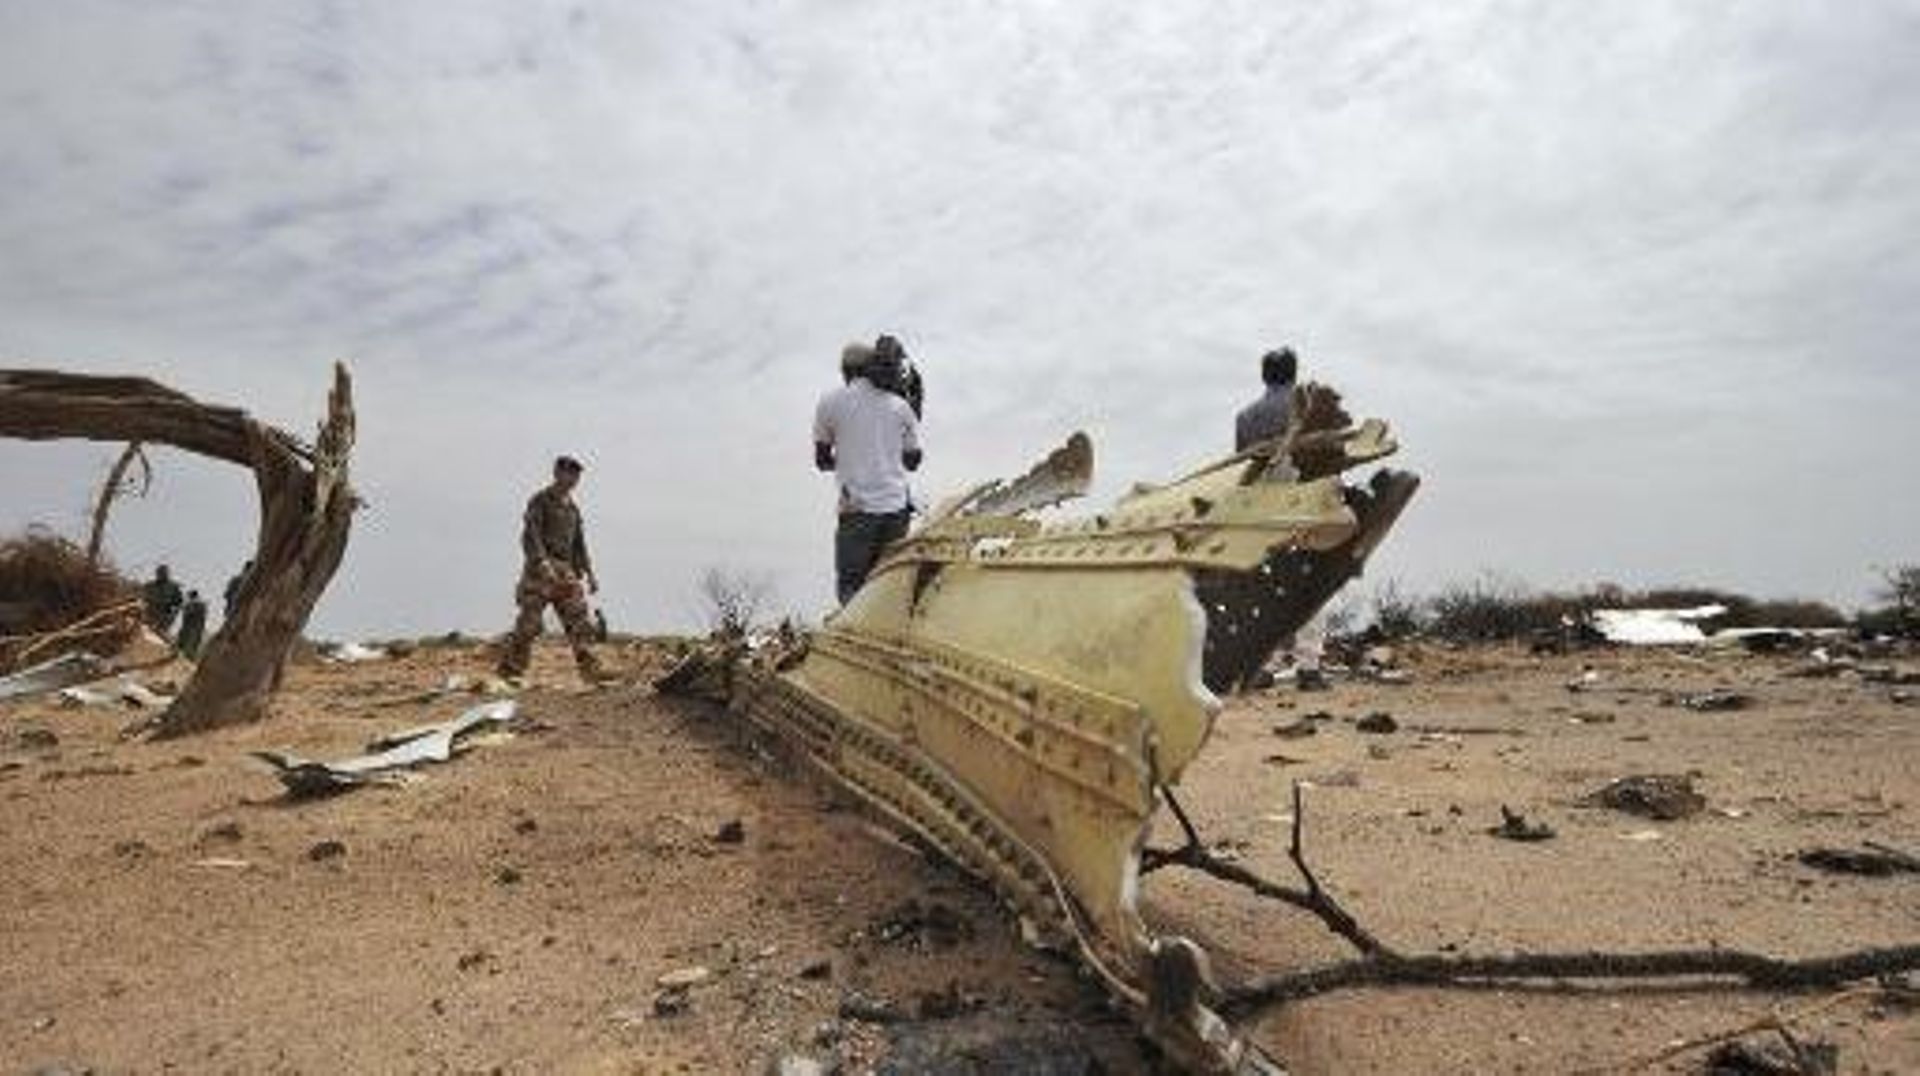 Les débris de l'avion d'Air Algérie le 26 juillet 2014, deux jours après son crash dans la région de Gossi au Mali